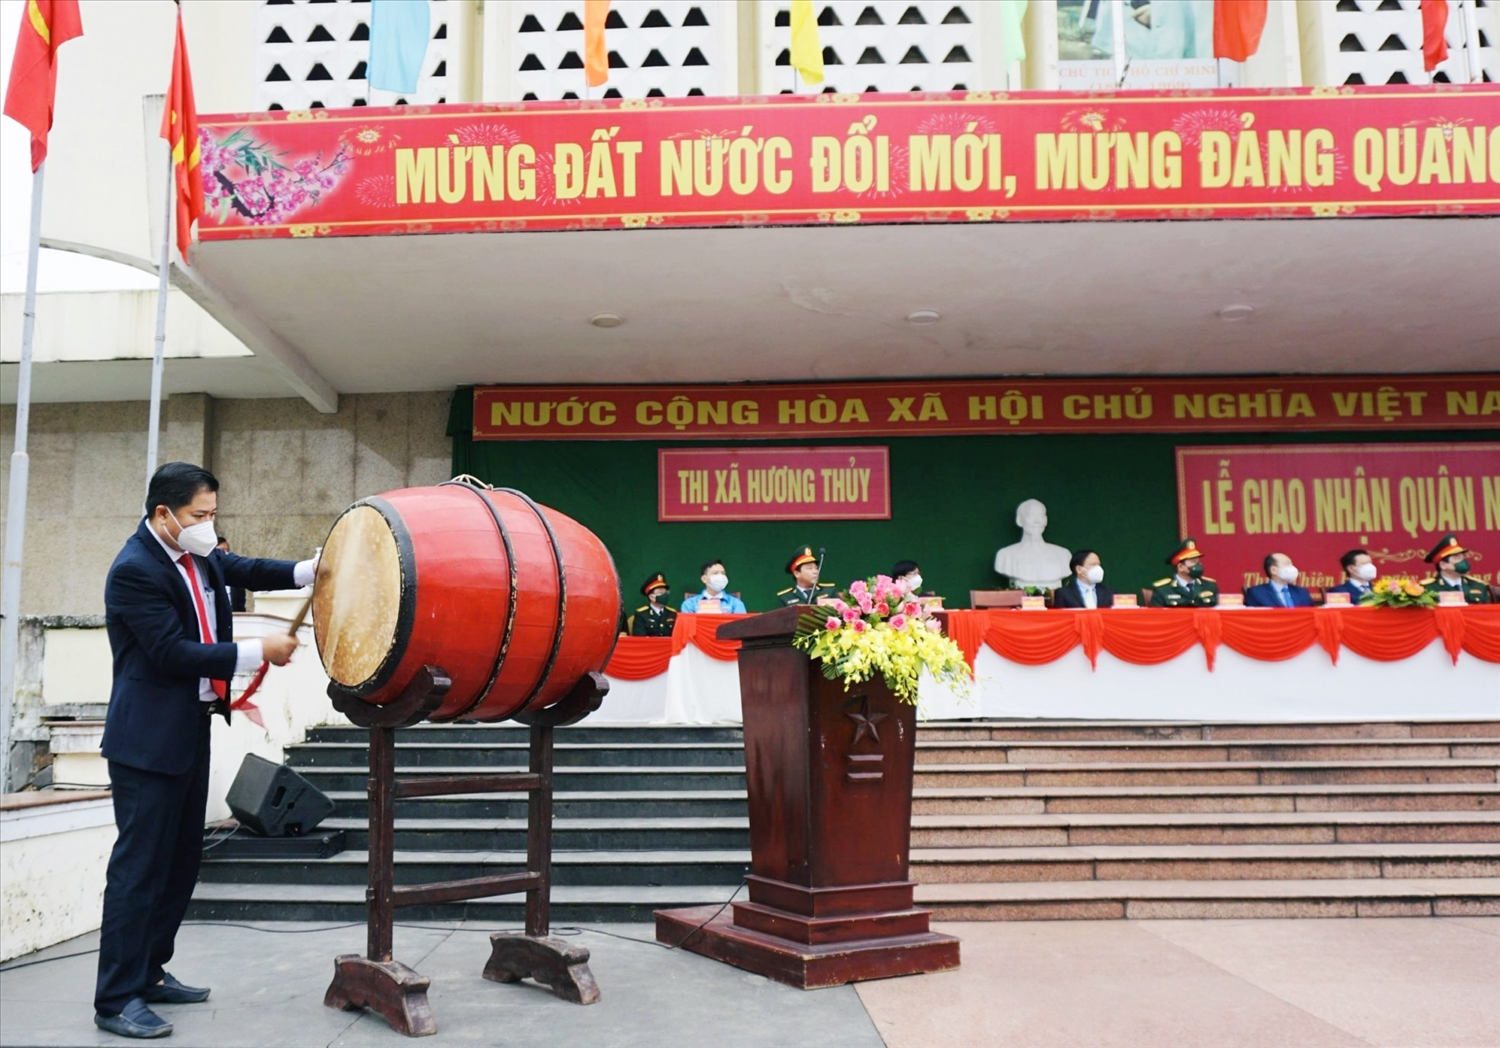 Đồng chí Nguyễn Thanh Minh, Chủ tịch UBND, Chủ tịch Hội đồng NVQS thị xã Hương Thủy, Thừa Thiên Huế đánh trống hội giao quân